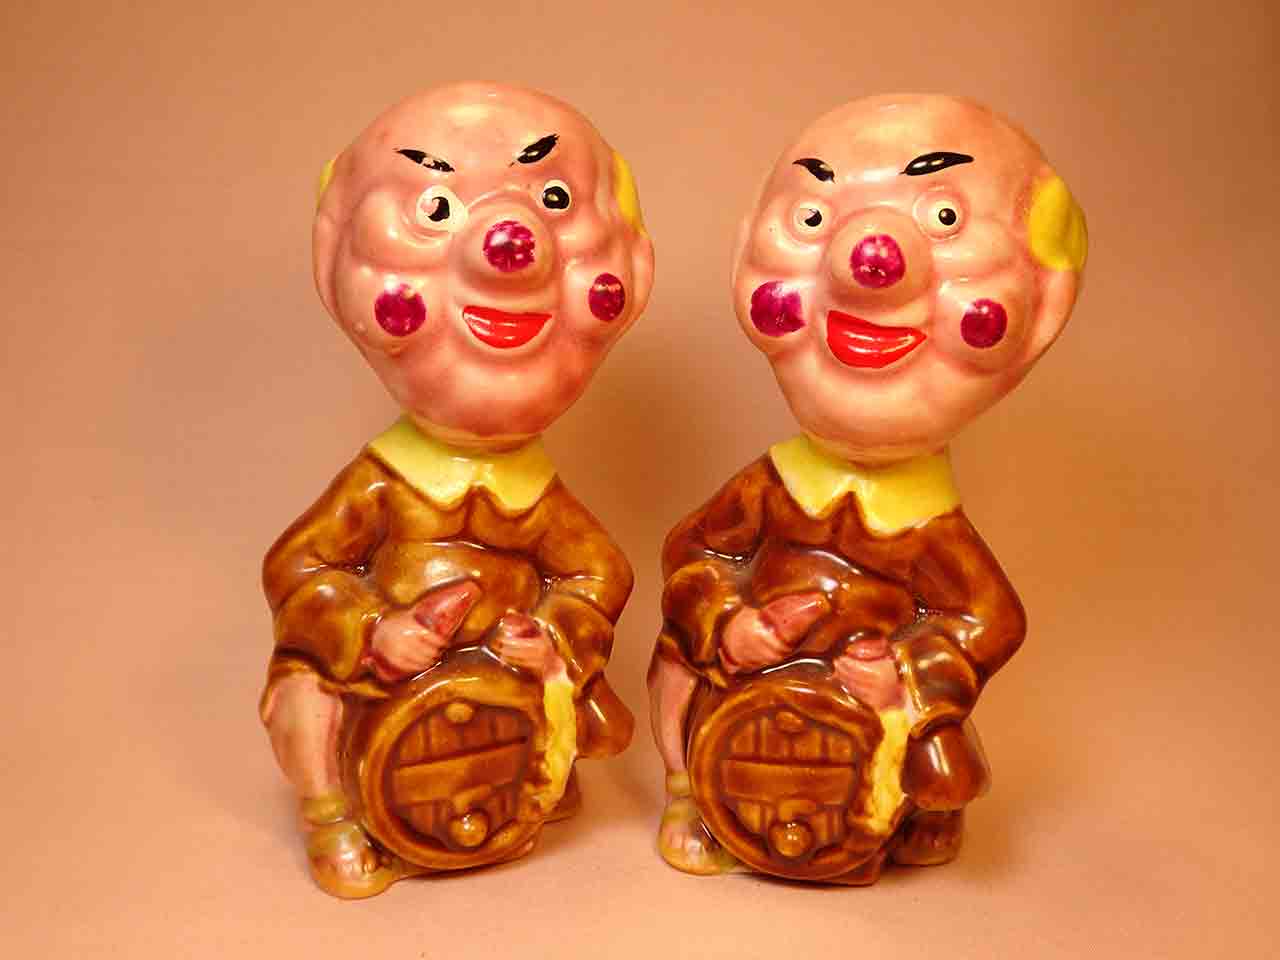 Clown-like strange fellows salt and pepper shakers - monks